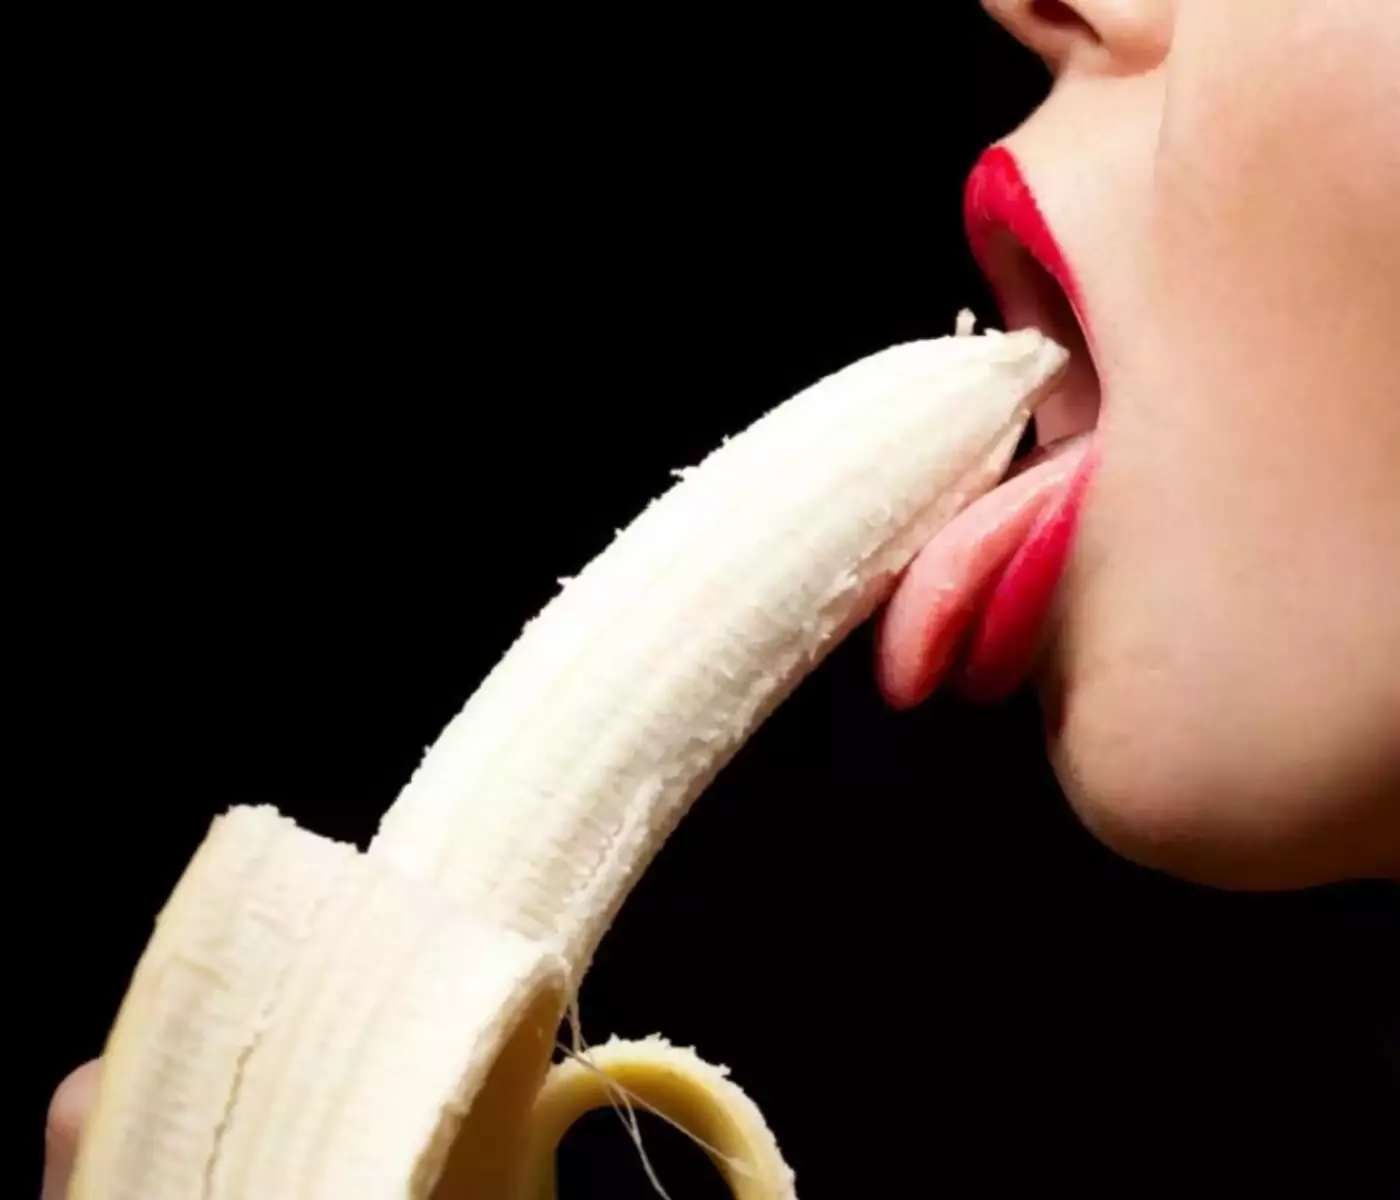 Eine Frau führt lasziv eine Banane zum Mund